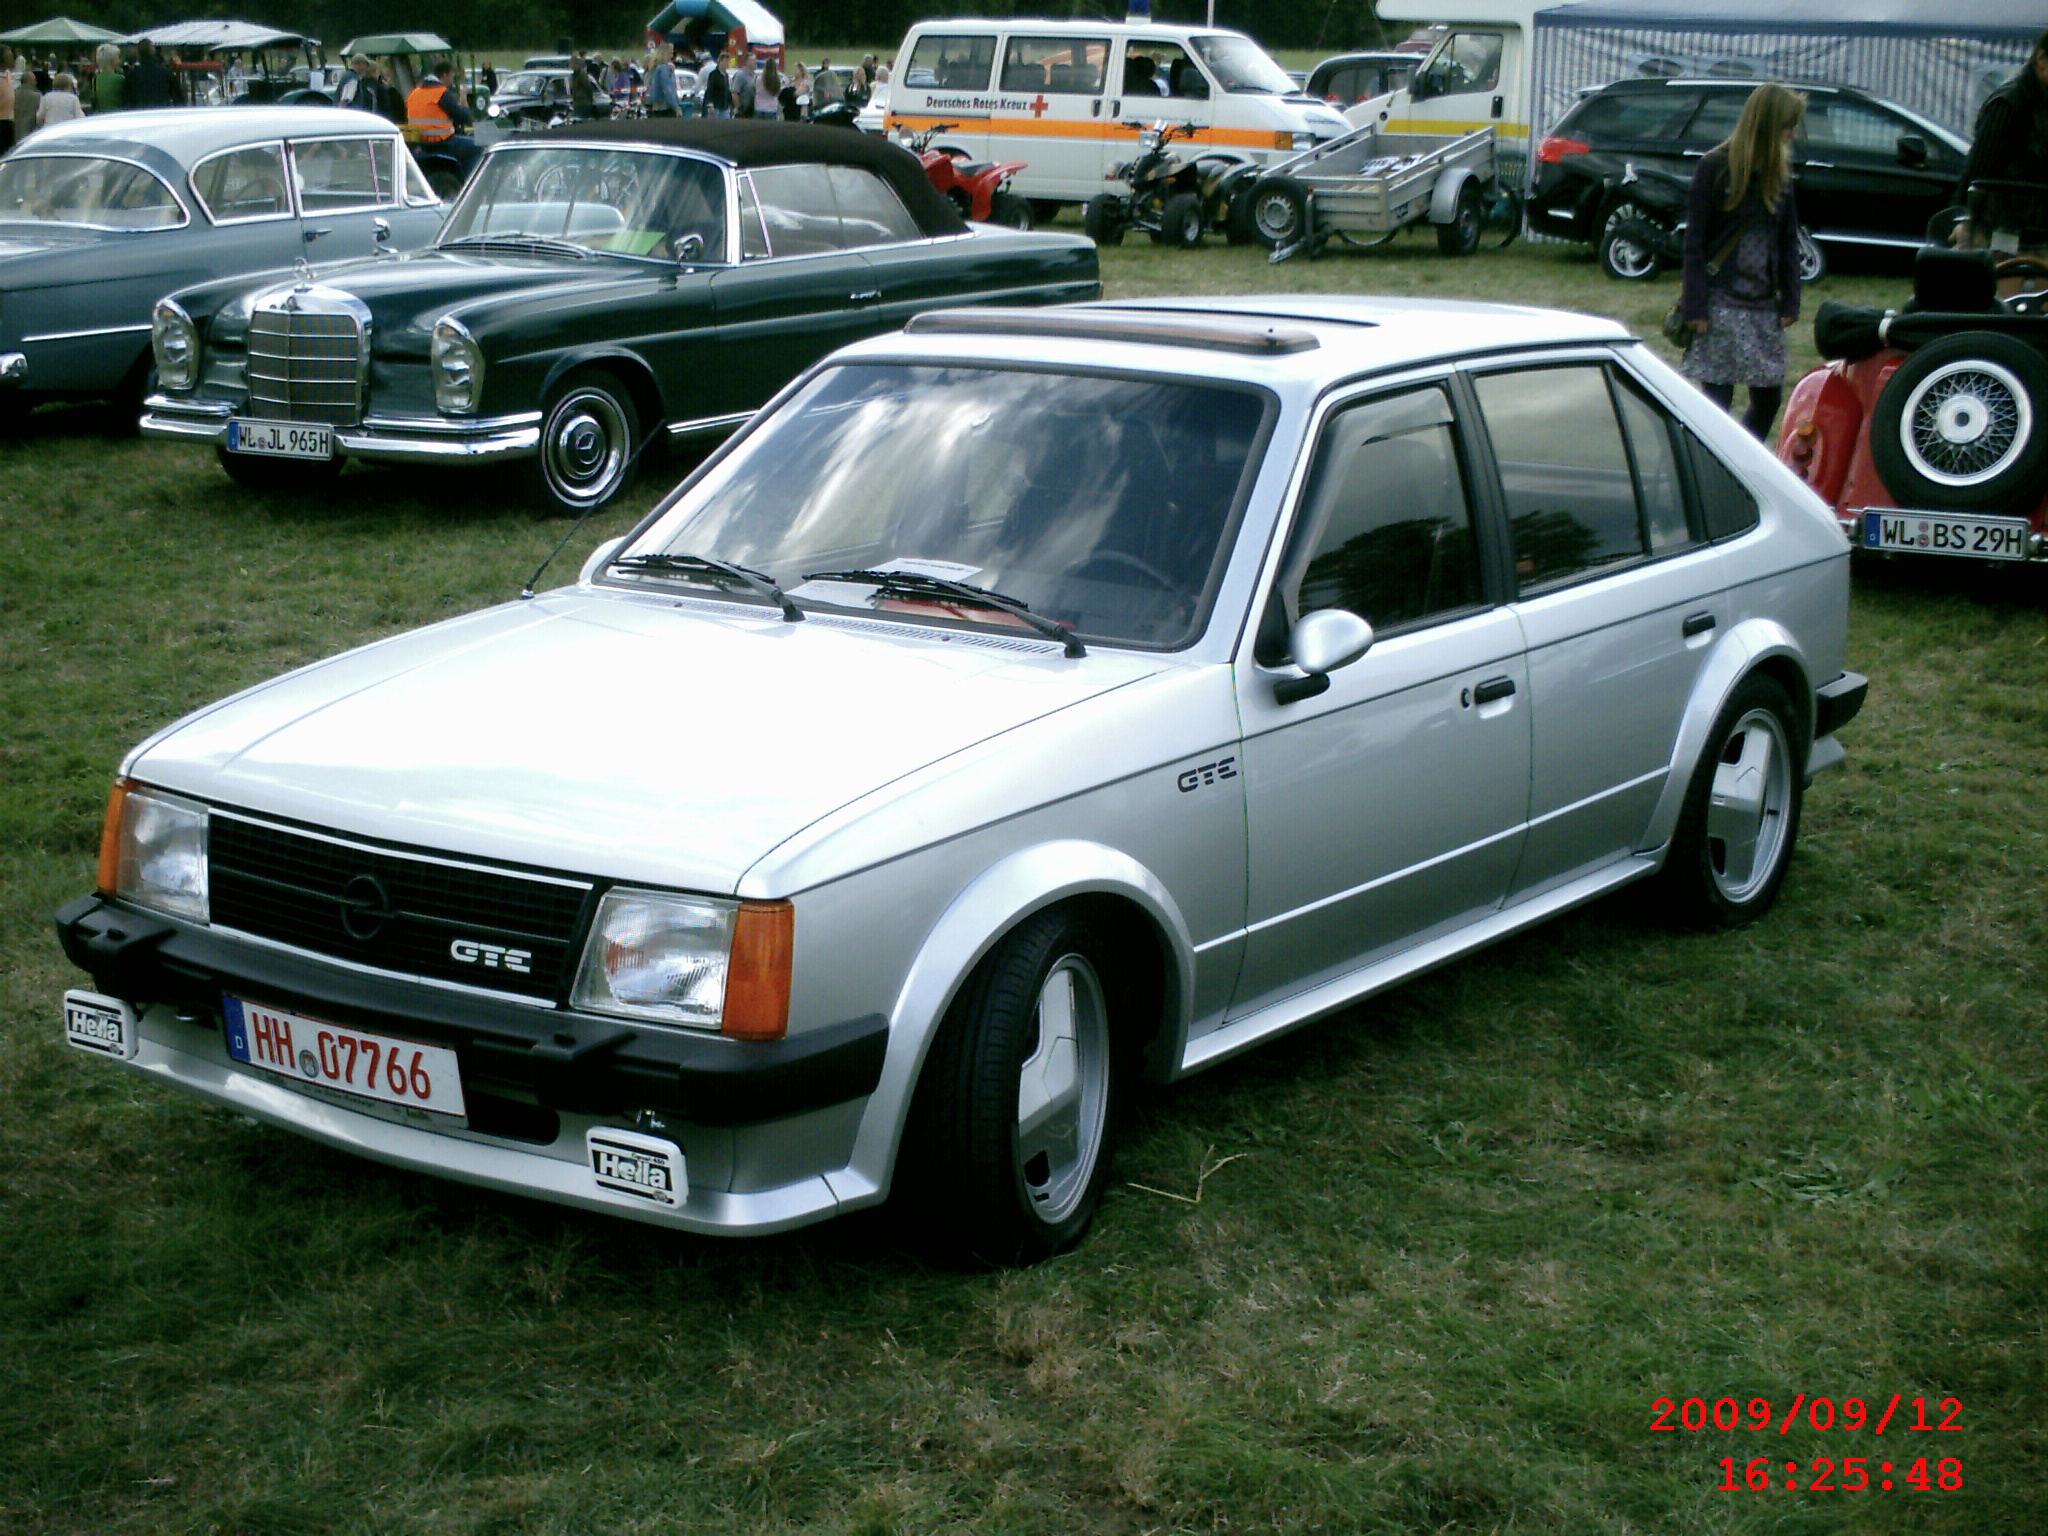 Opel Kadett D GT-E 1983 -1- | Flickr - Photo Sharing!